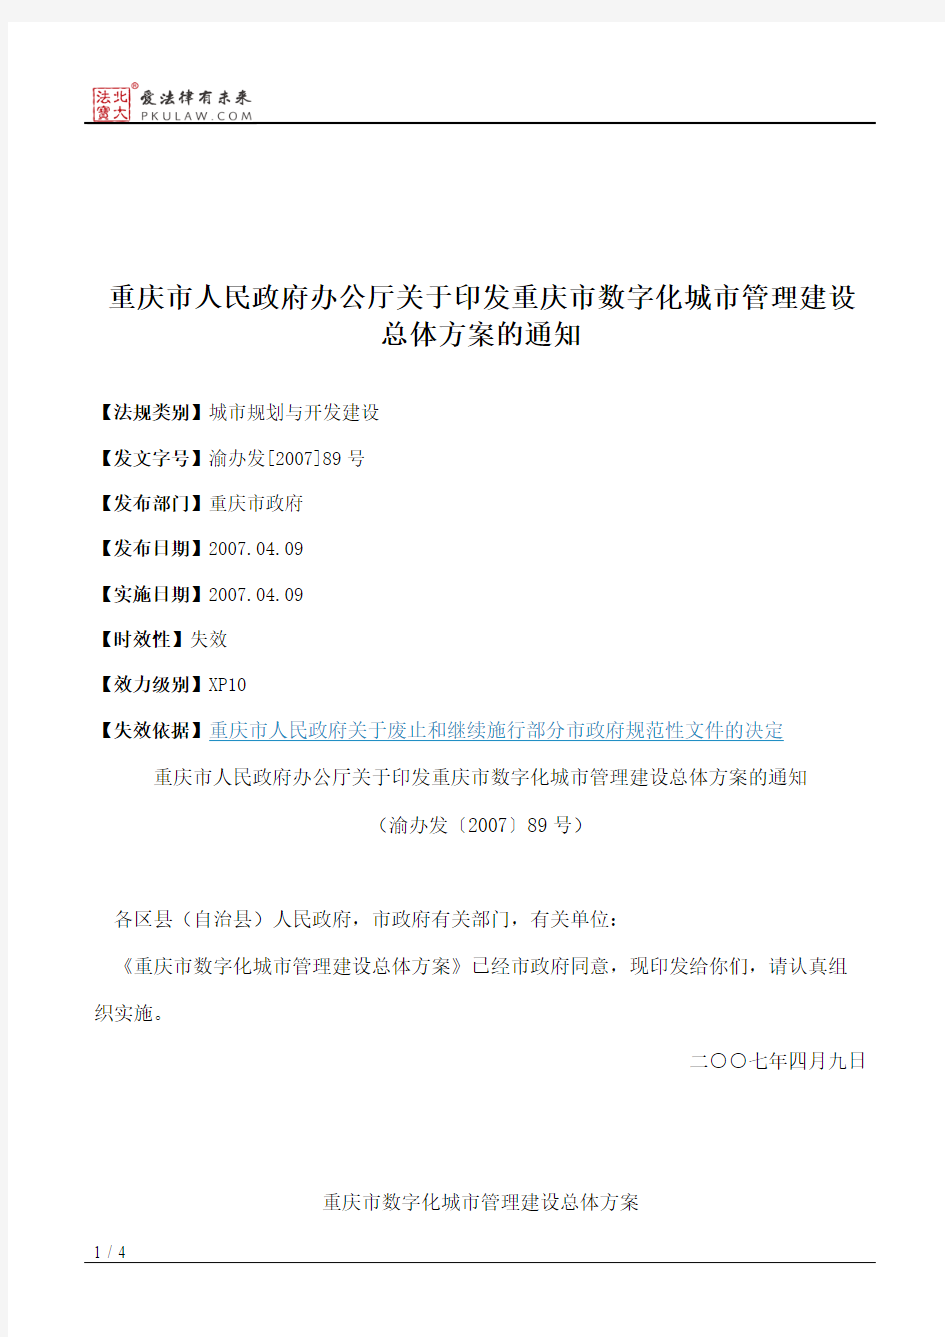 重庆市人民政府办公厅关于印发重庆市数字化城市管理建设总体方案的通知